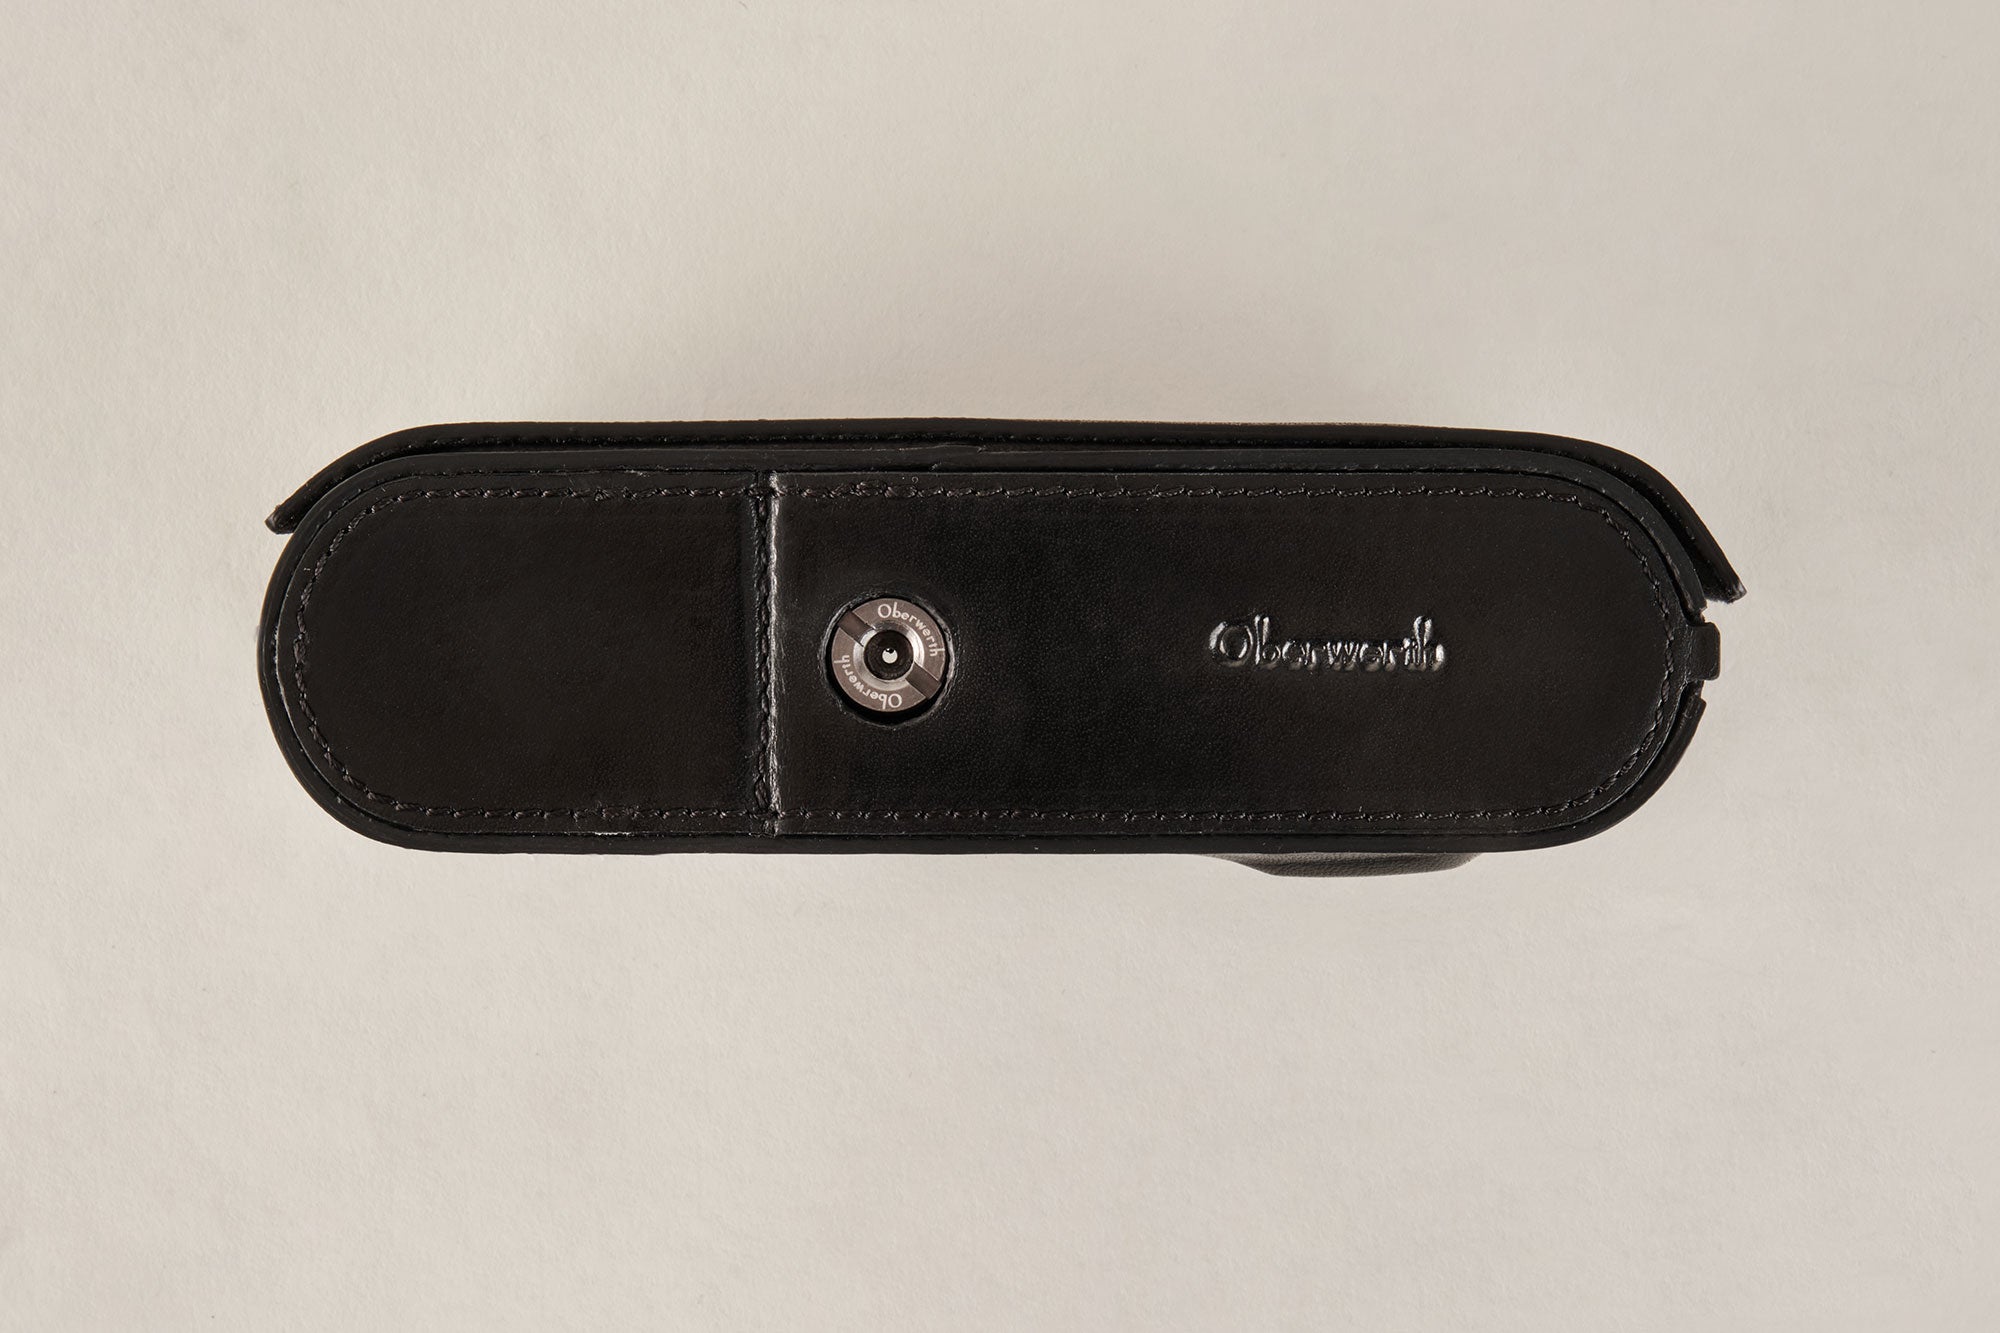 Leica M11 ハーフケース (オープンバージョン) オーストリッチレザー